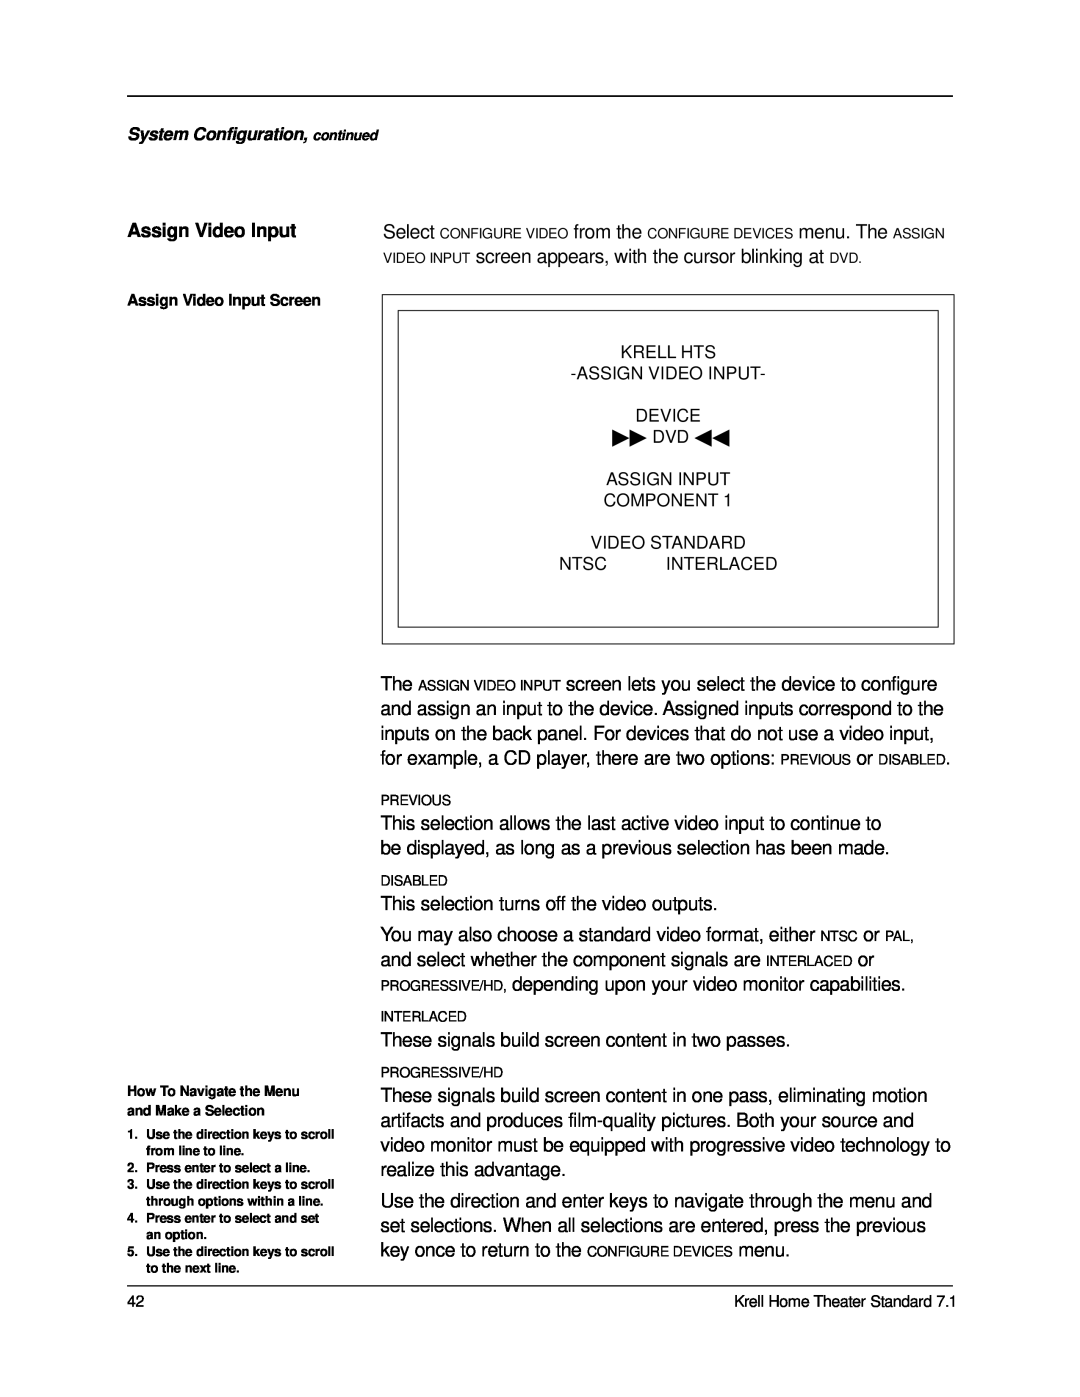 Krell Industries 7.1 manual Assign Video Input 